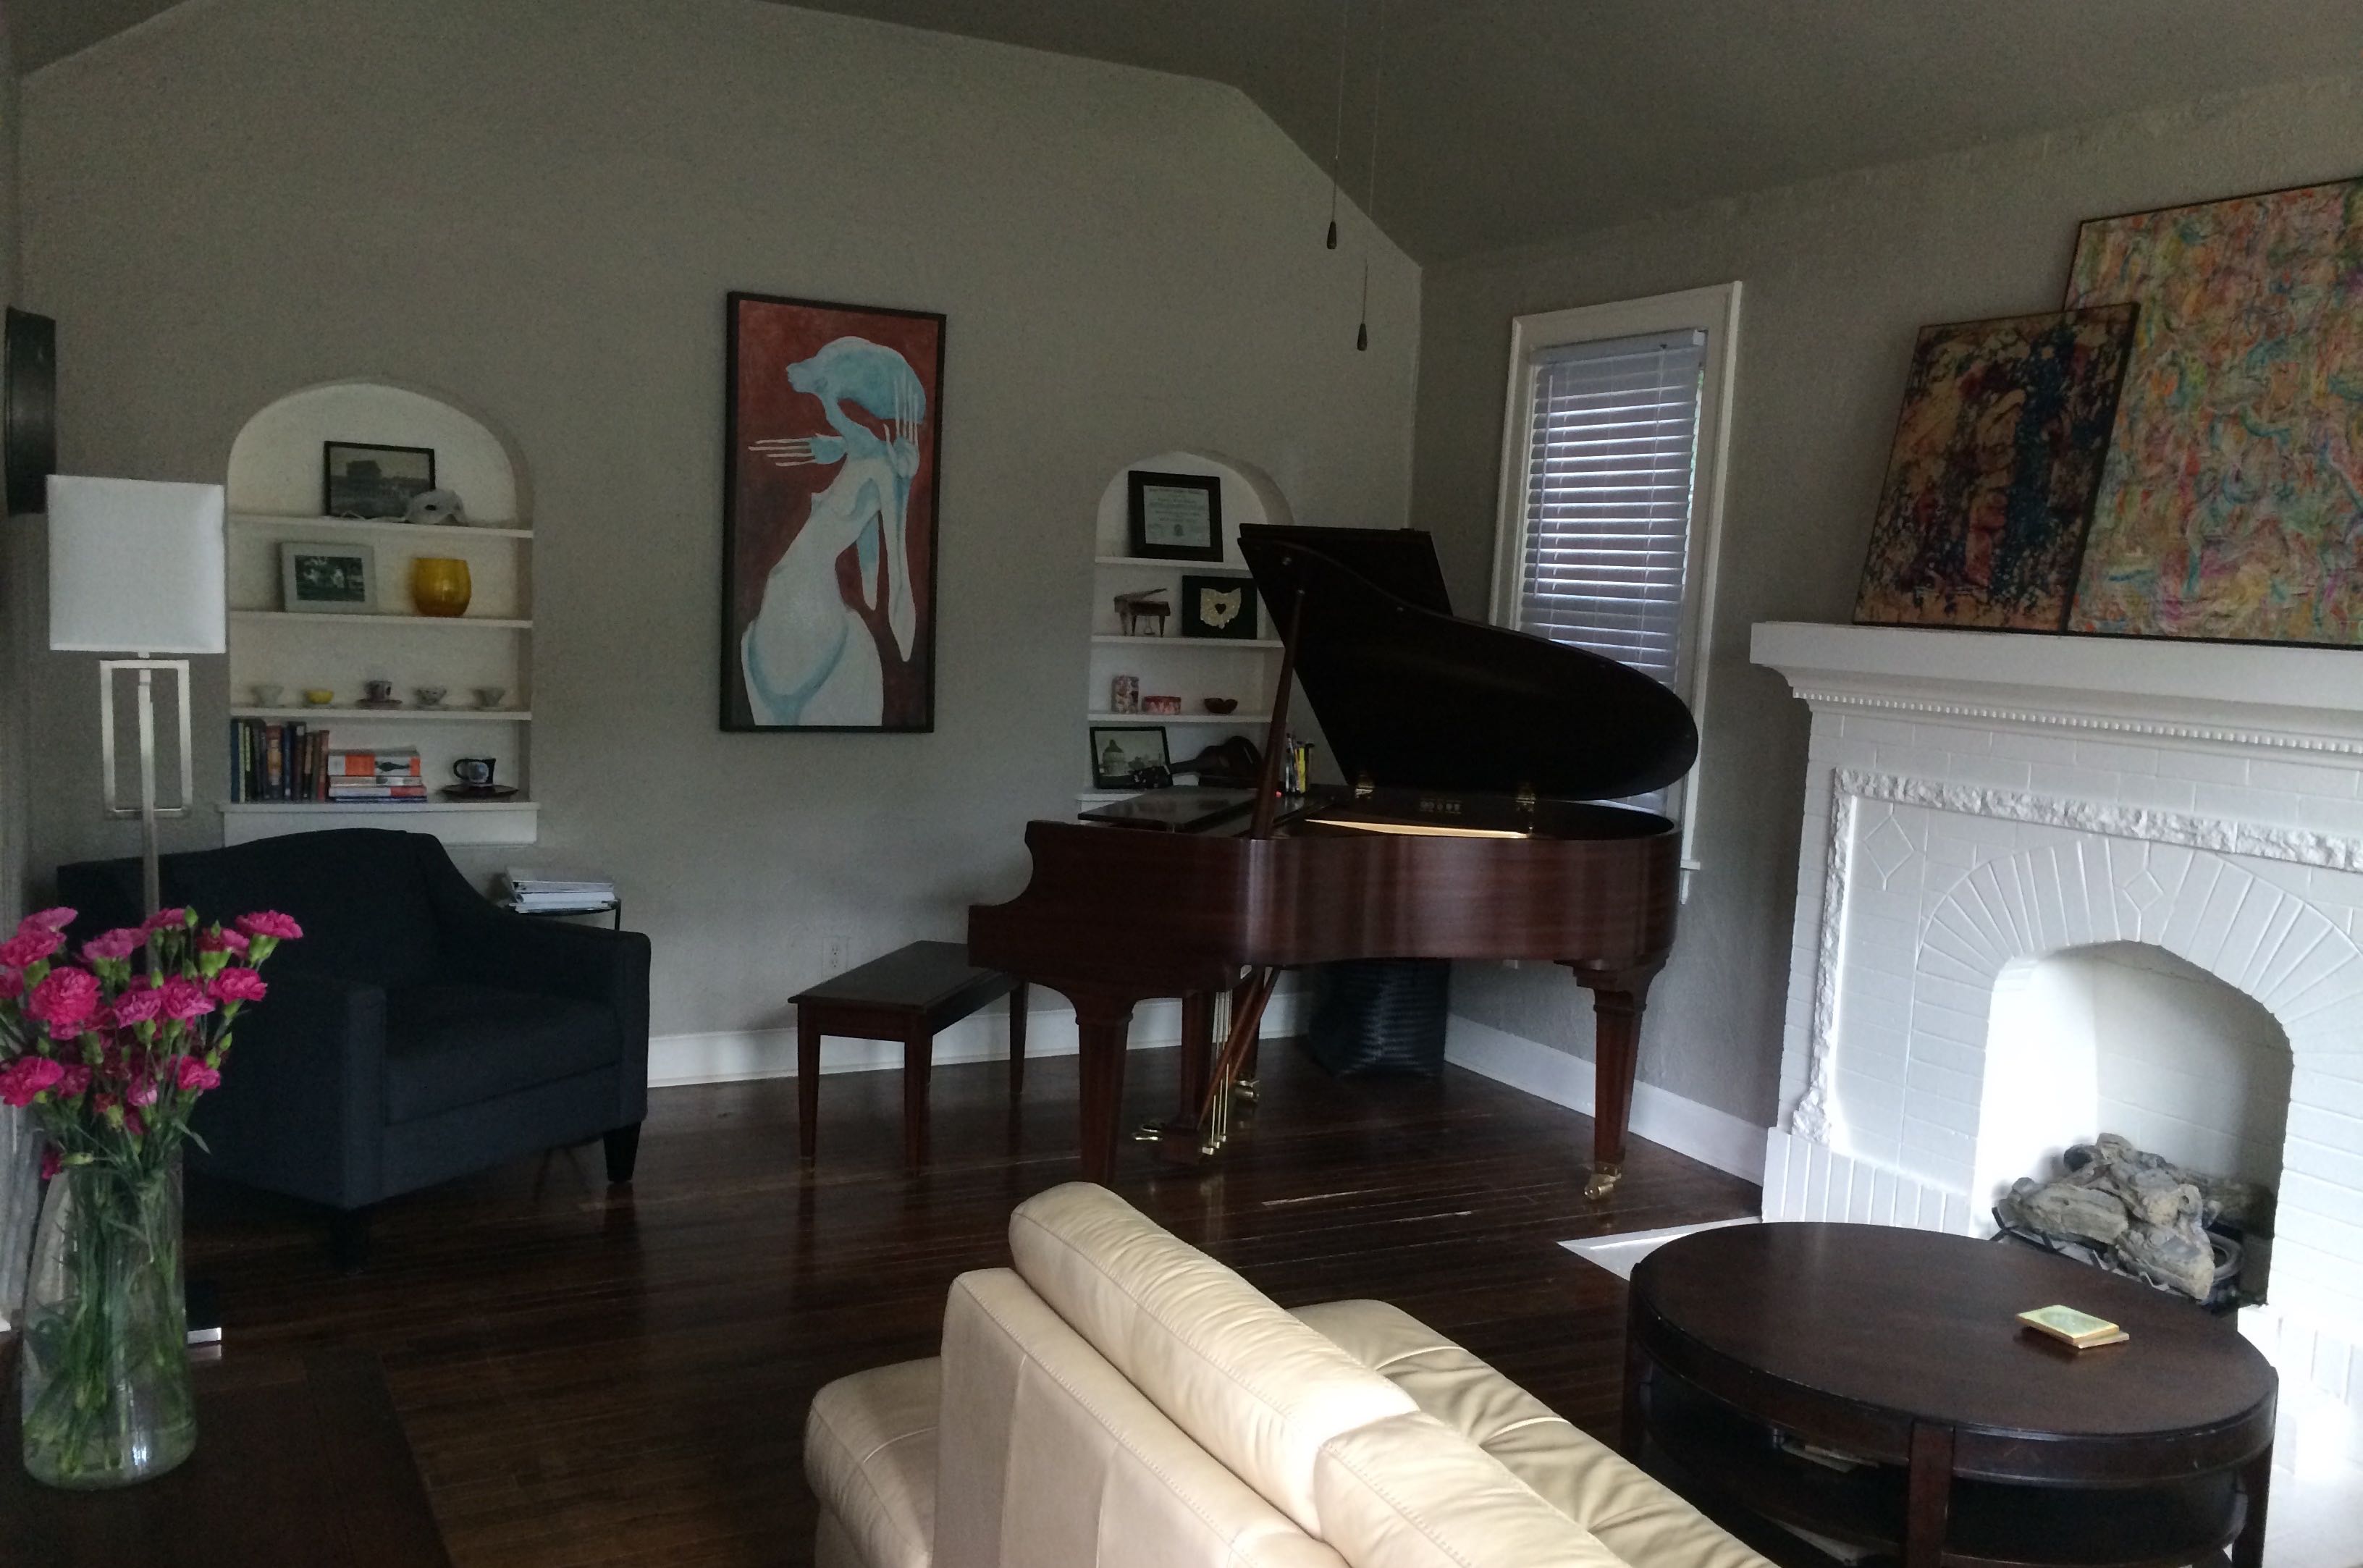 Inside the piano studio in OKC